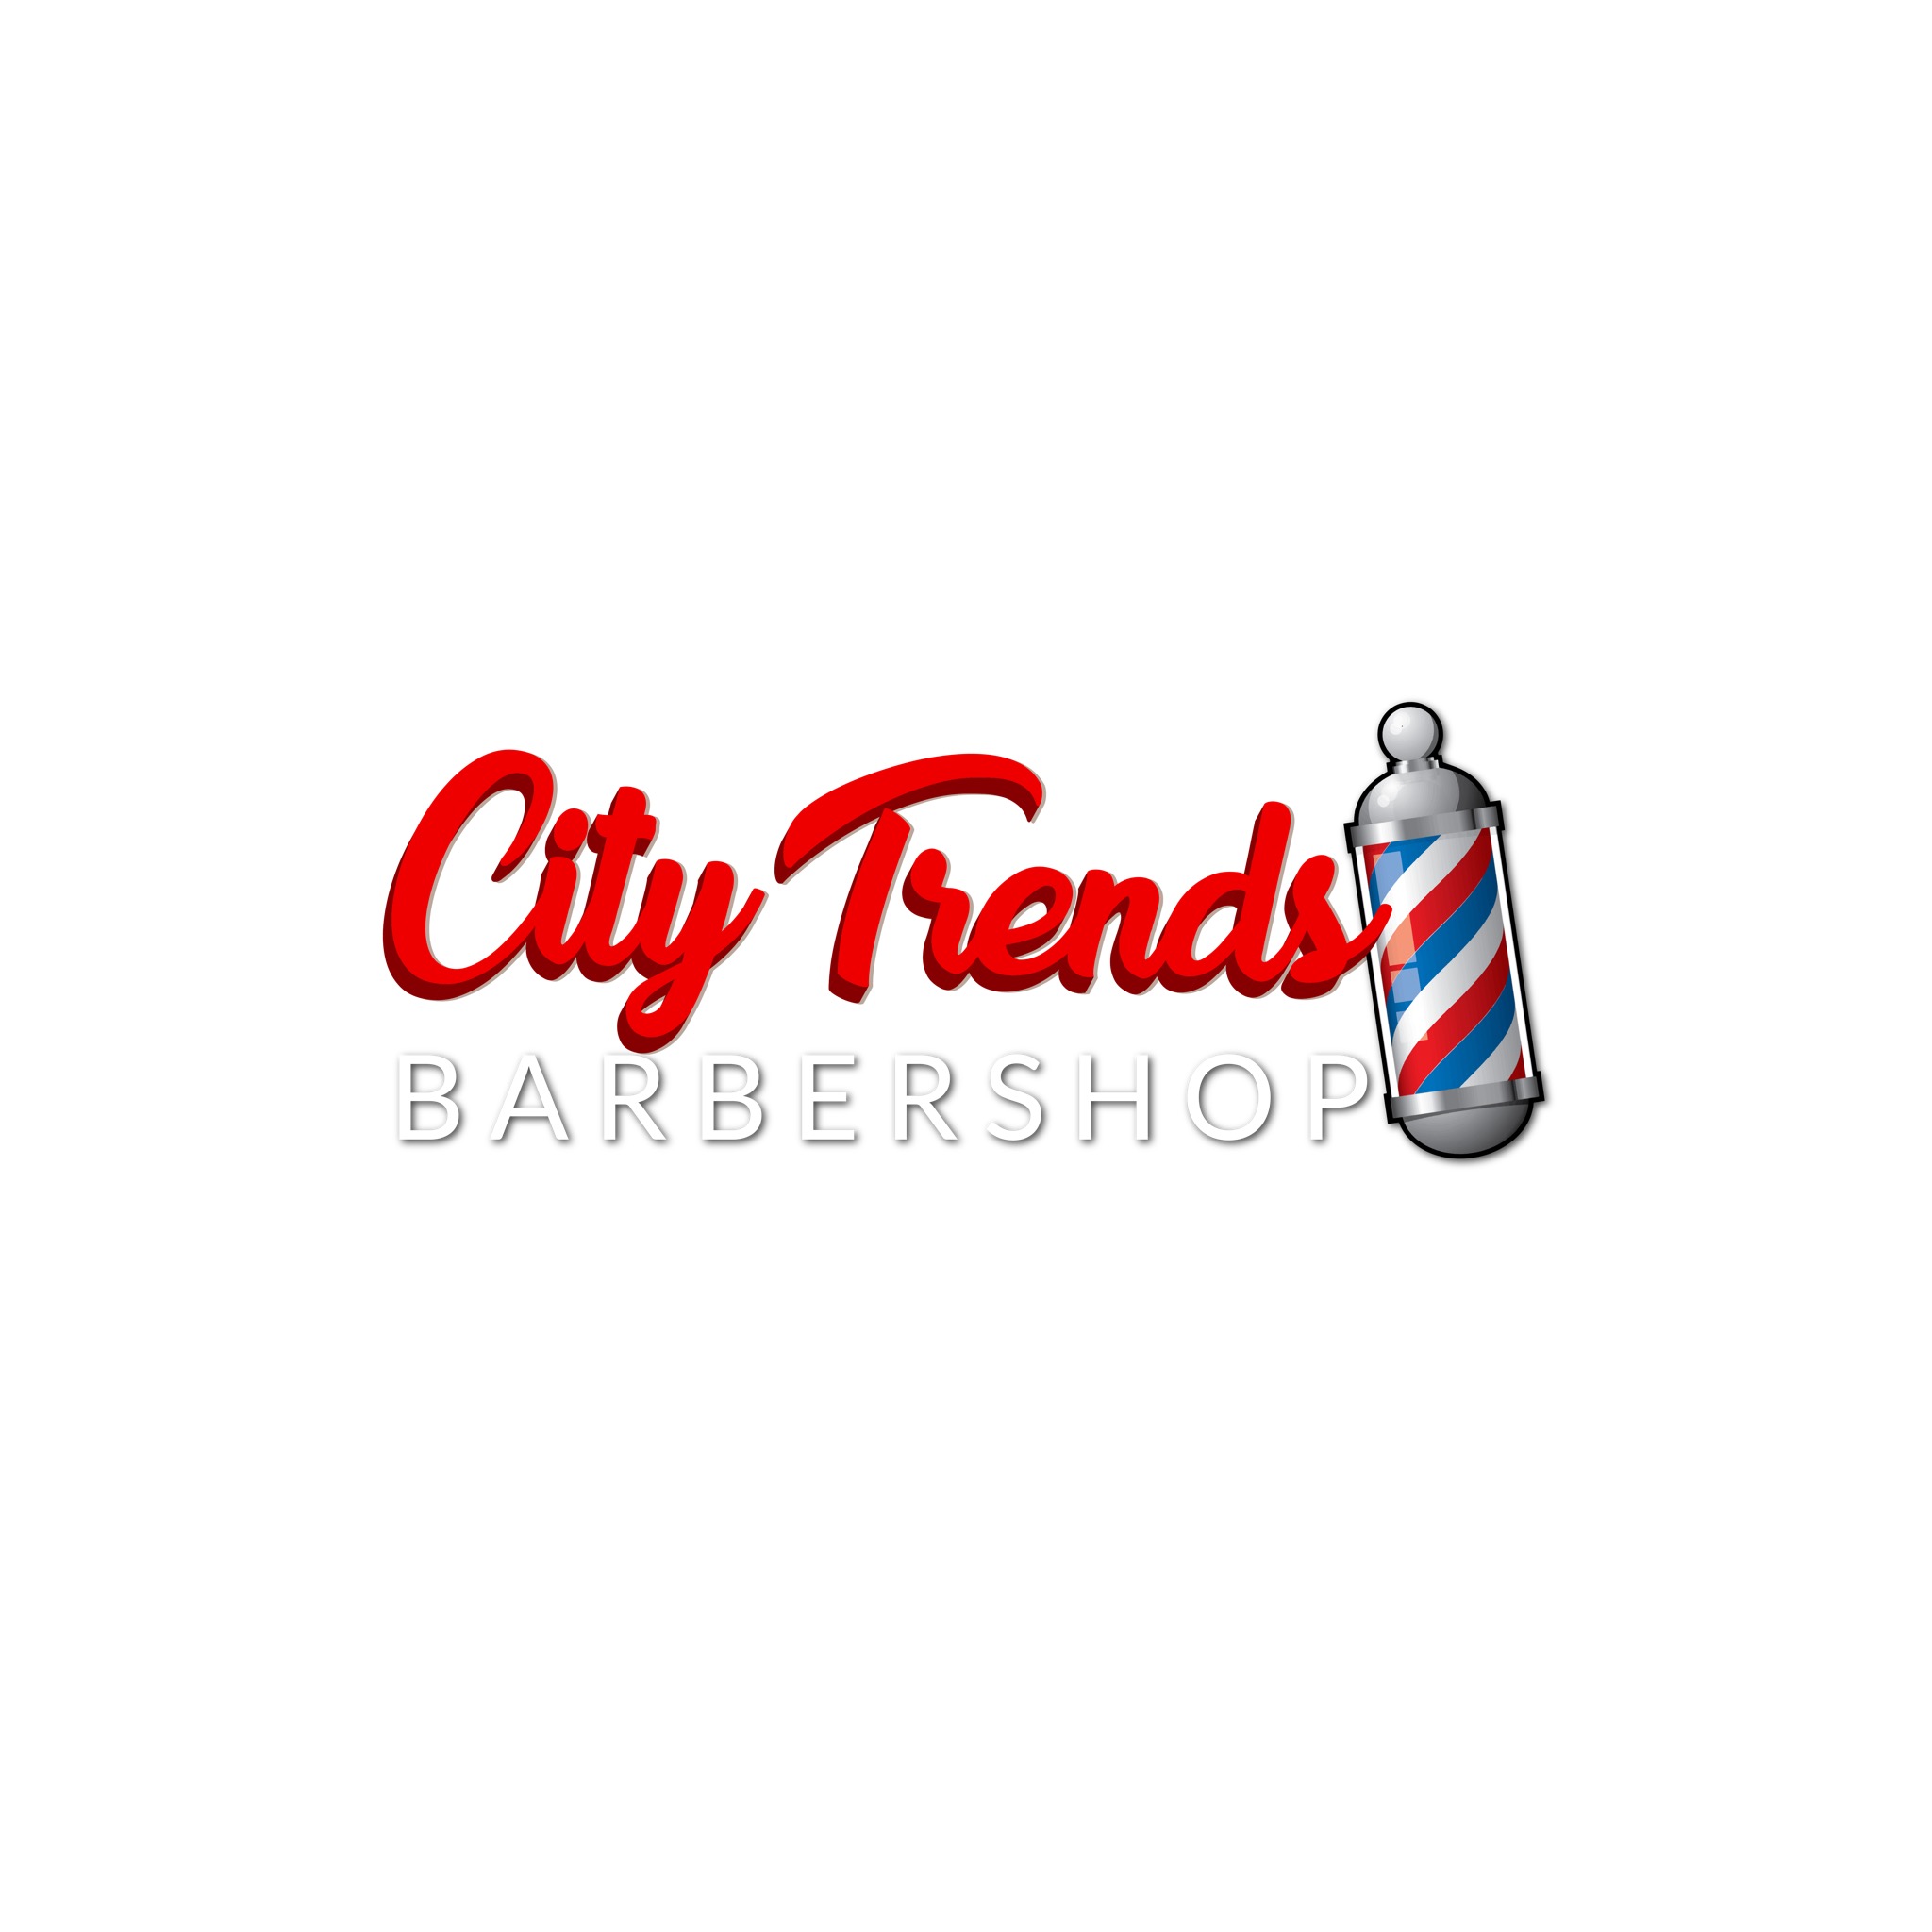 City Trends Barbershop